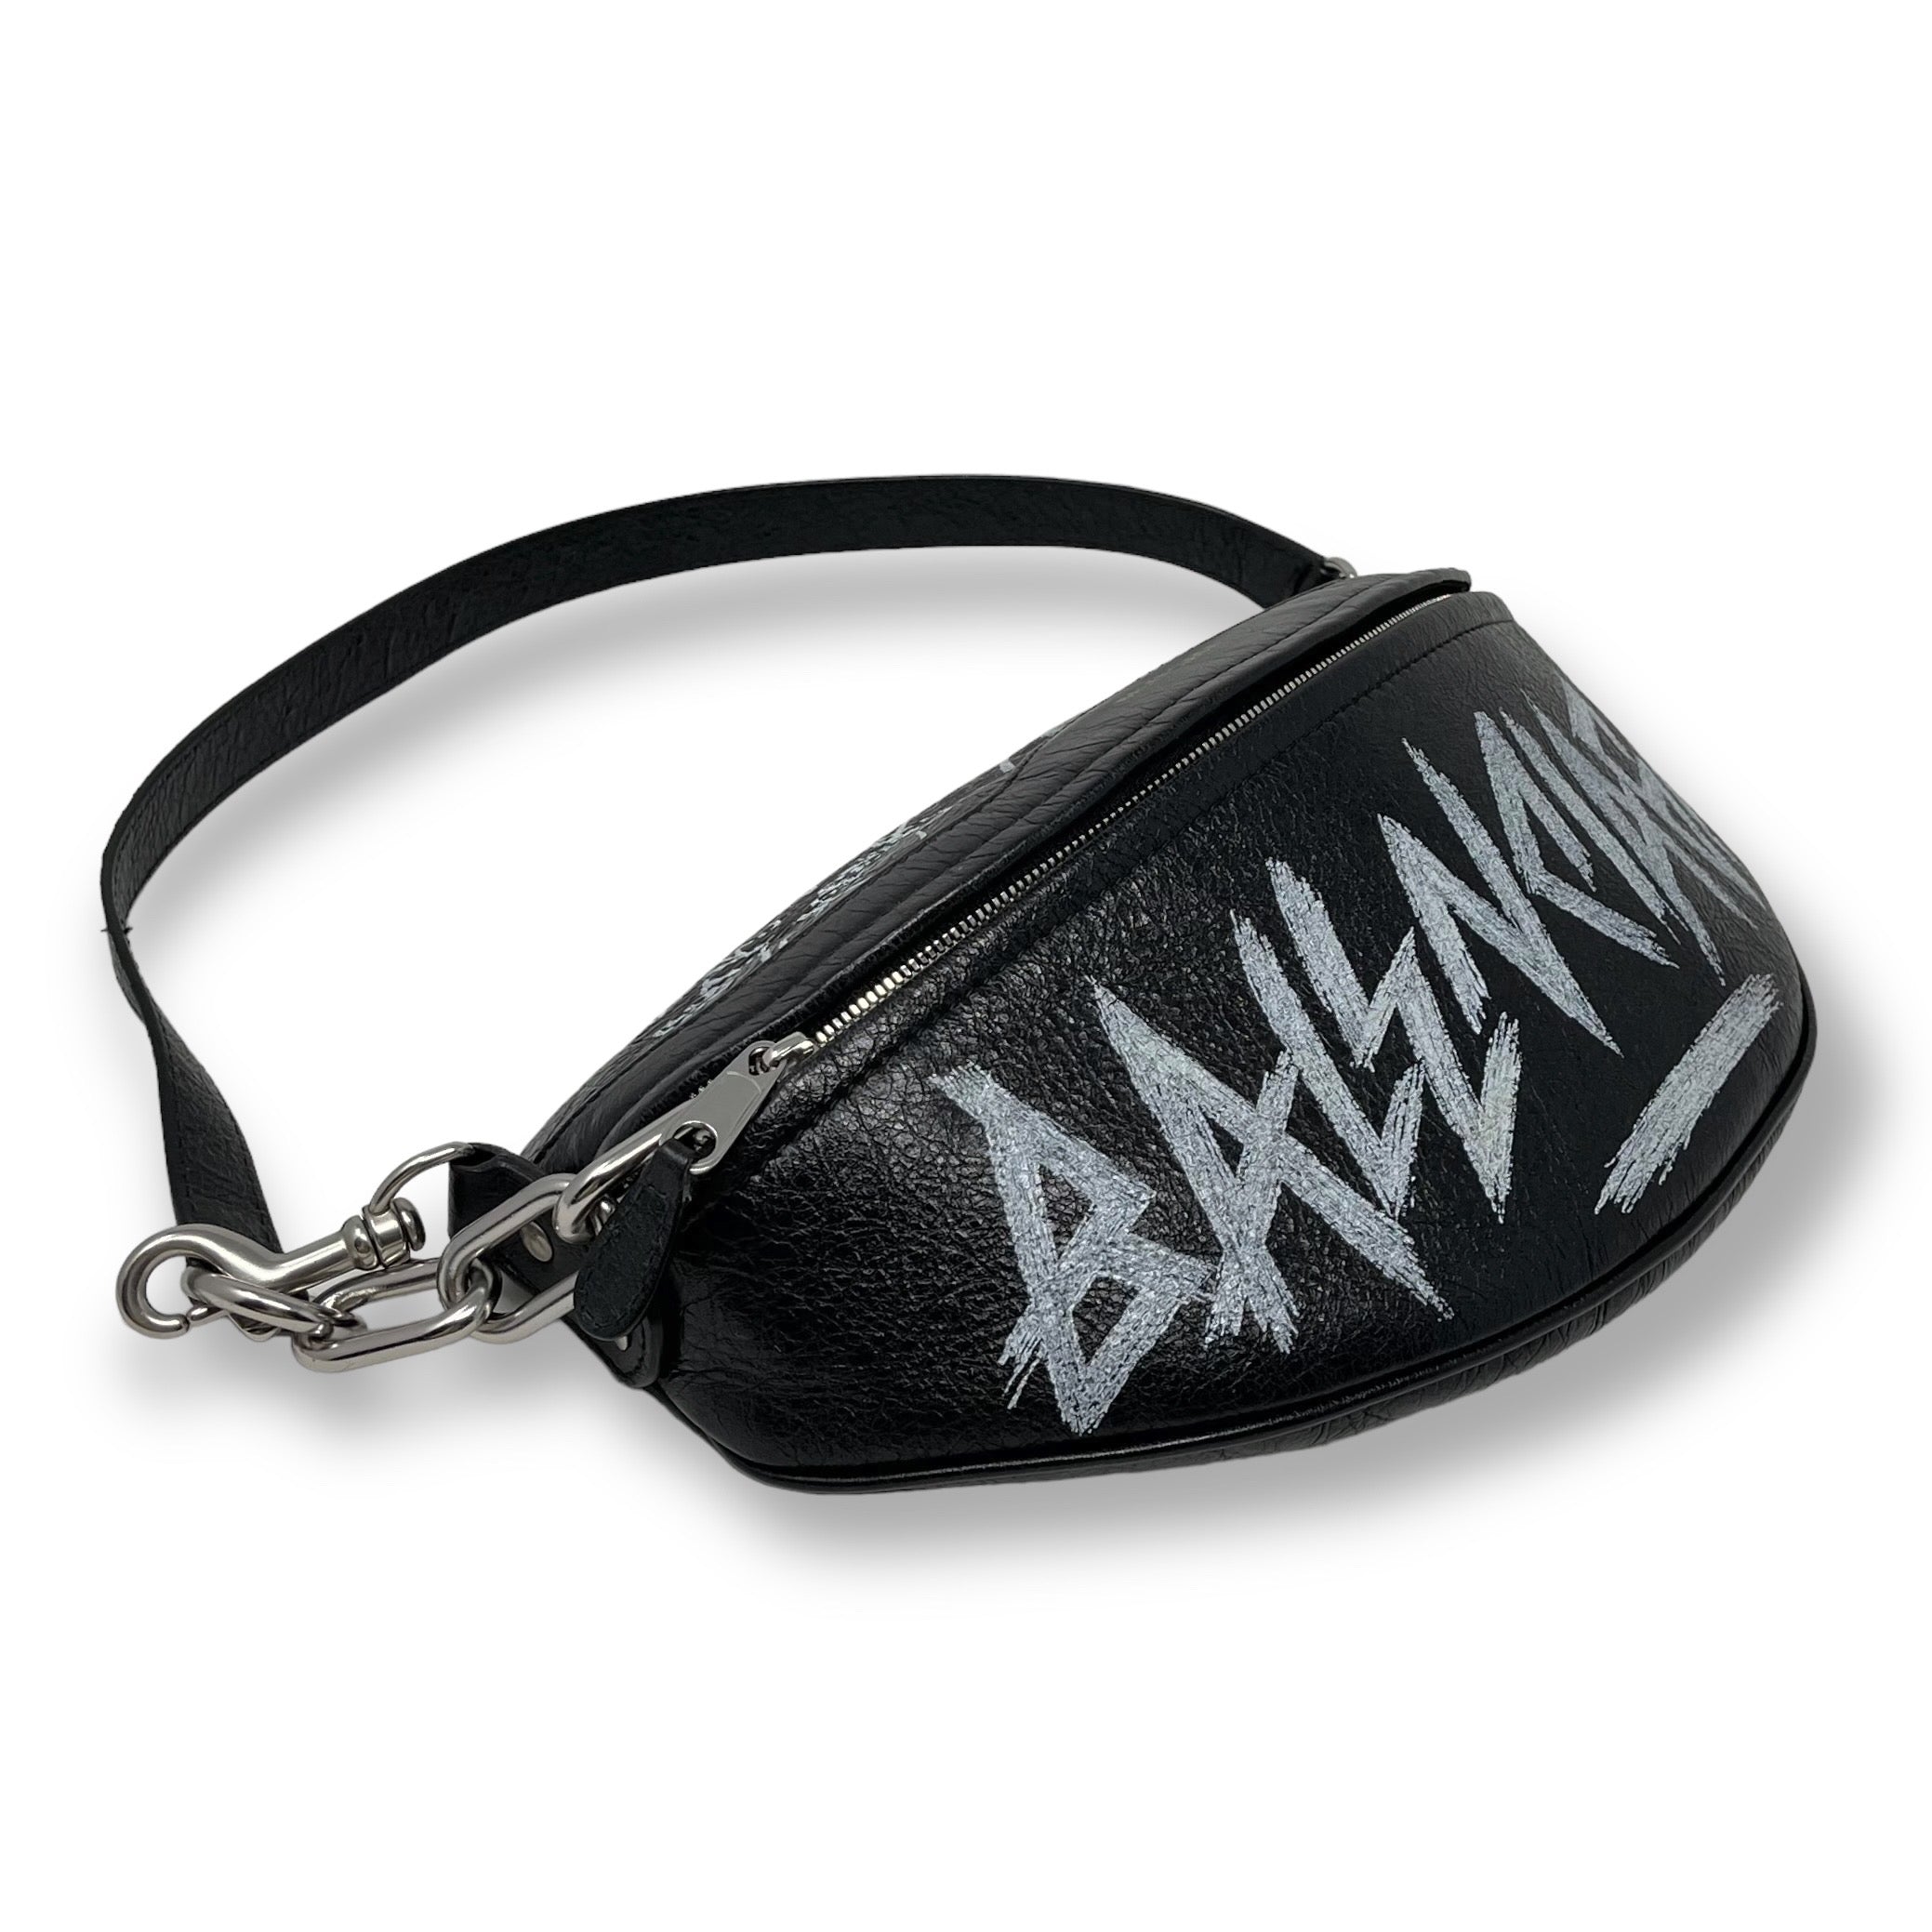 Balenciaga Black Graffiti Souvenir Shoulder Belt Bag